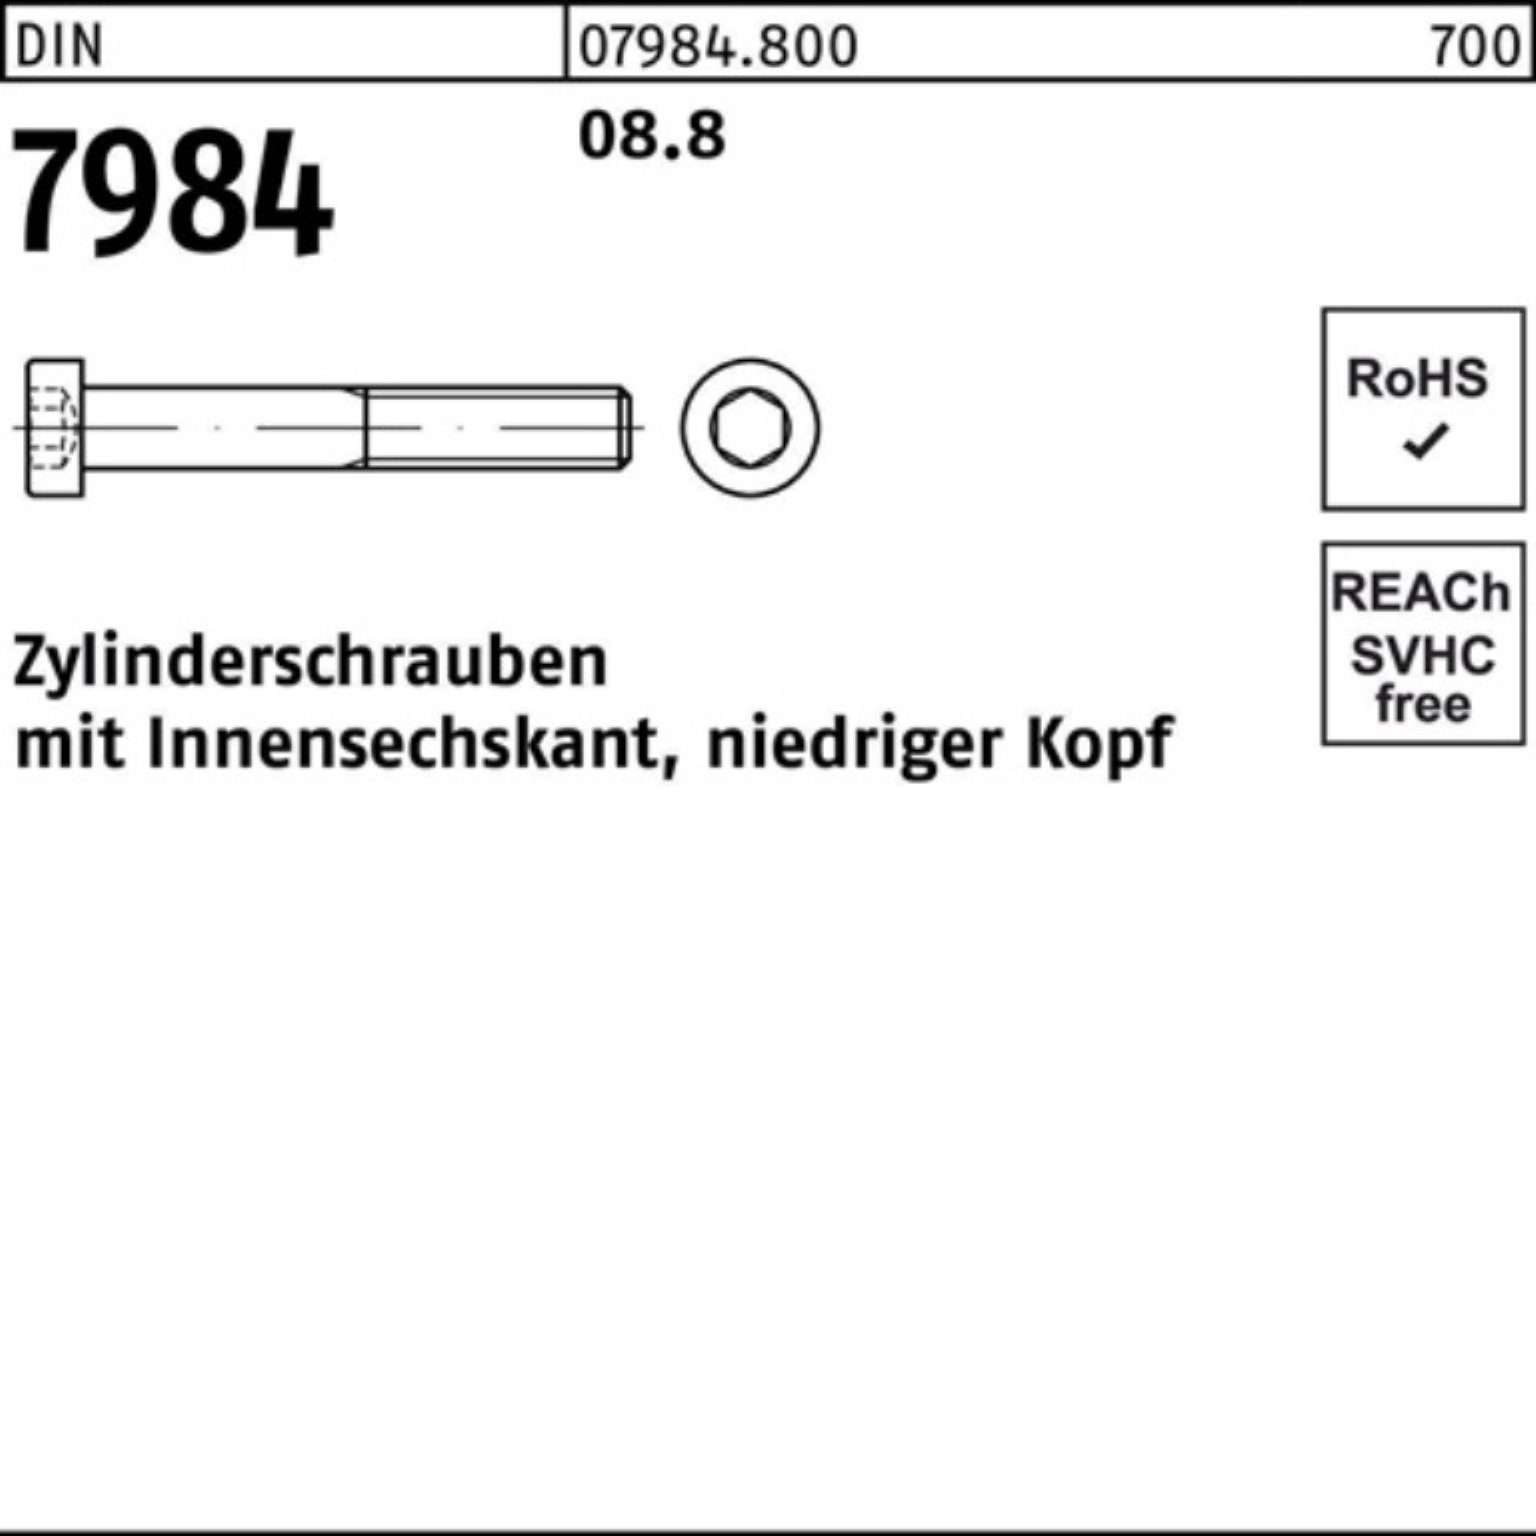 80 Reyher Innen-6kt M24x 1 7984 Zylinderschraube DIN 100er Stück Pack Zylinderschraube DI 8.8